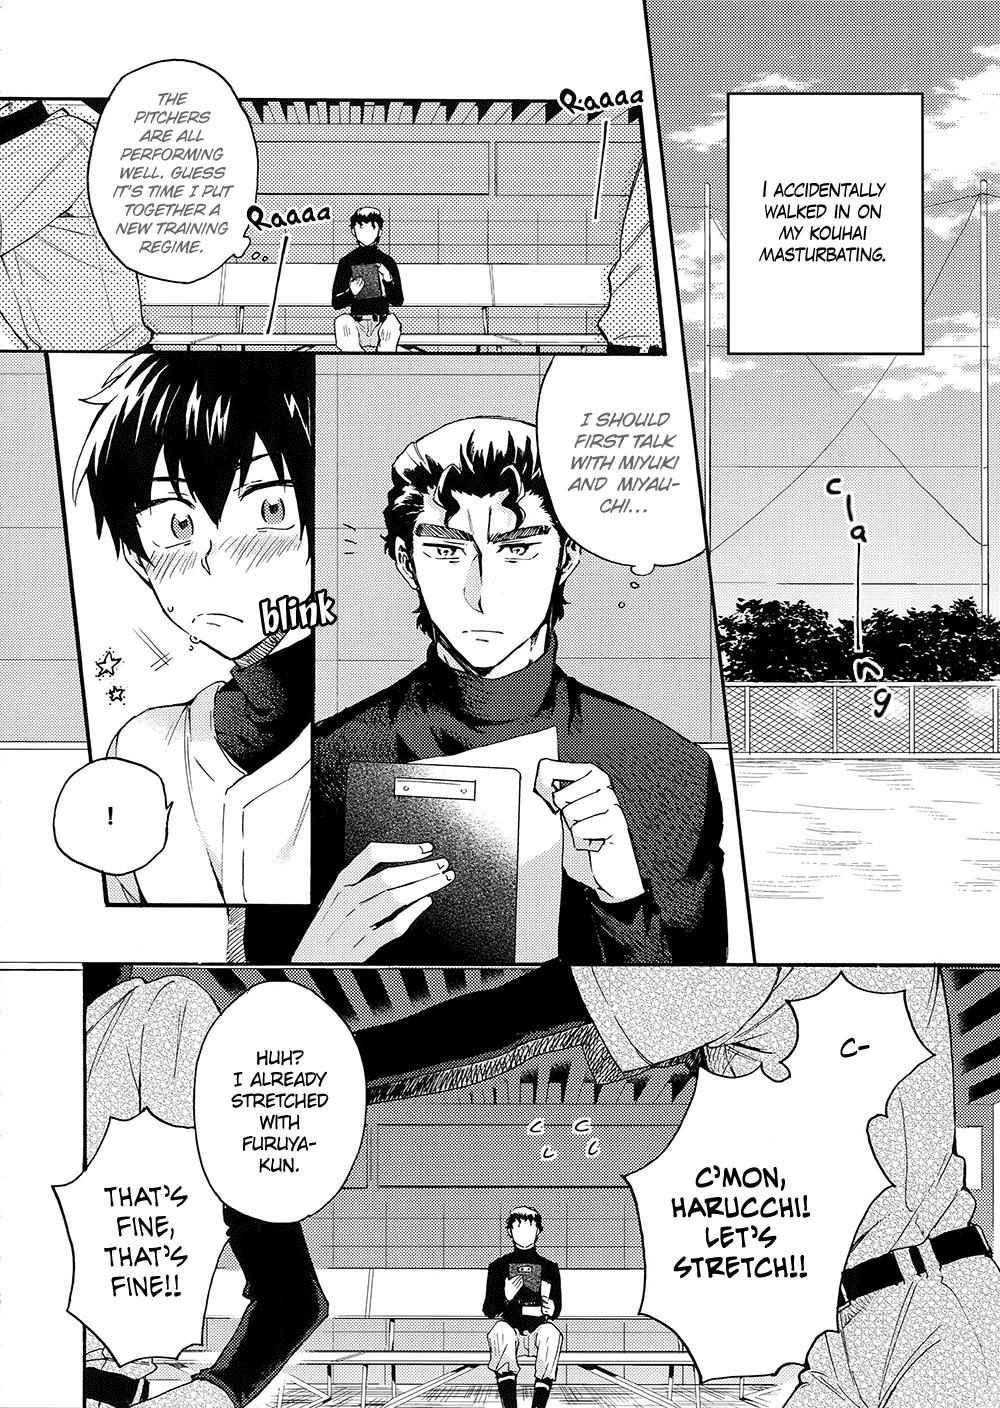 Face Fucking Stop!! Sawamura-kun! - Daiya no ace | ace of diamond Gay Military - Page 5